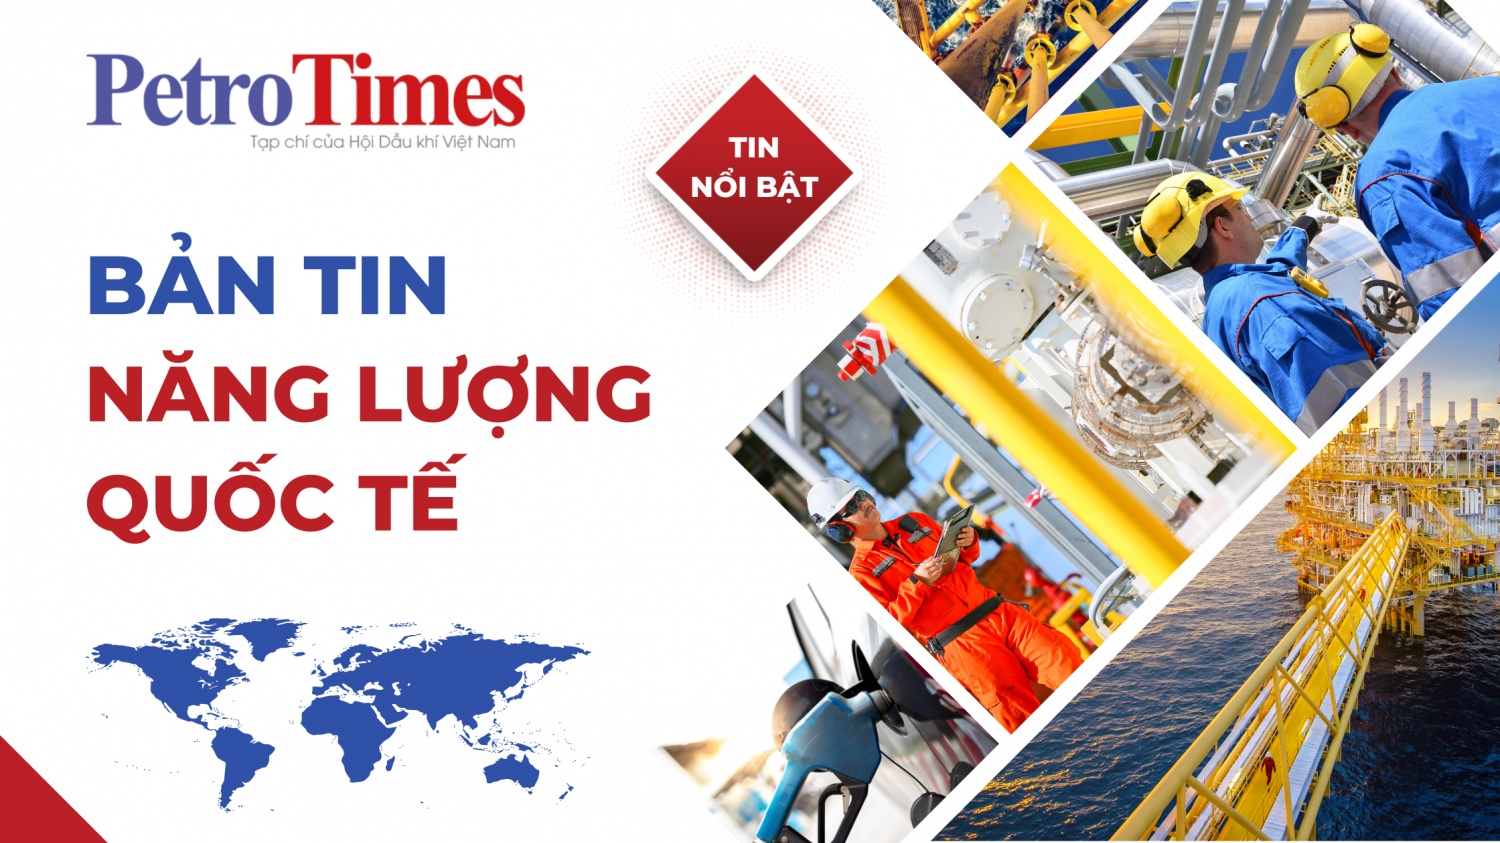 Bản tin Năng lượng Quốc tế 3/2: Nhập khẩu dầu thô vào châu Á đạt kỷ lục